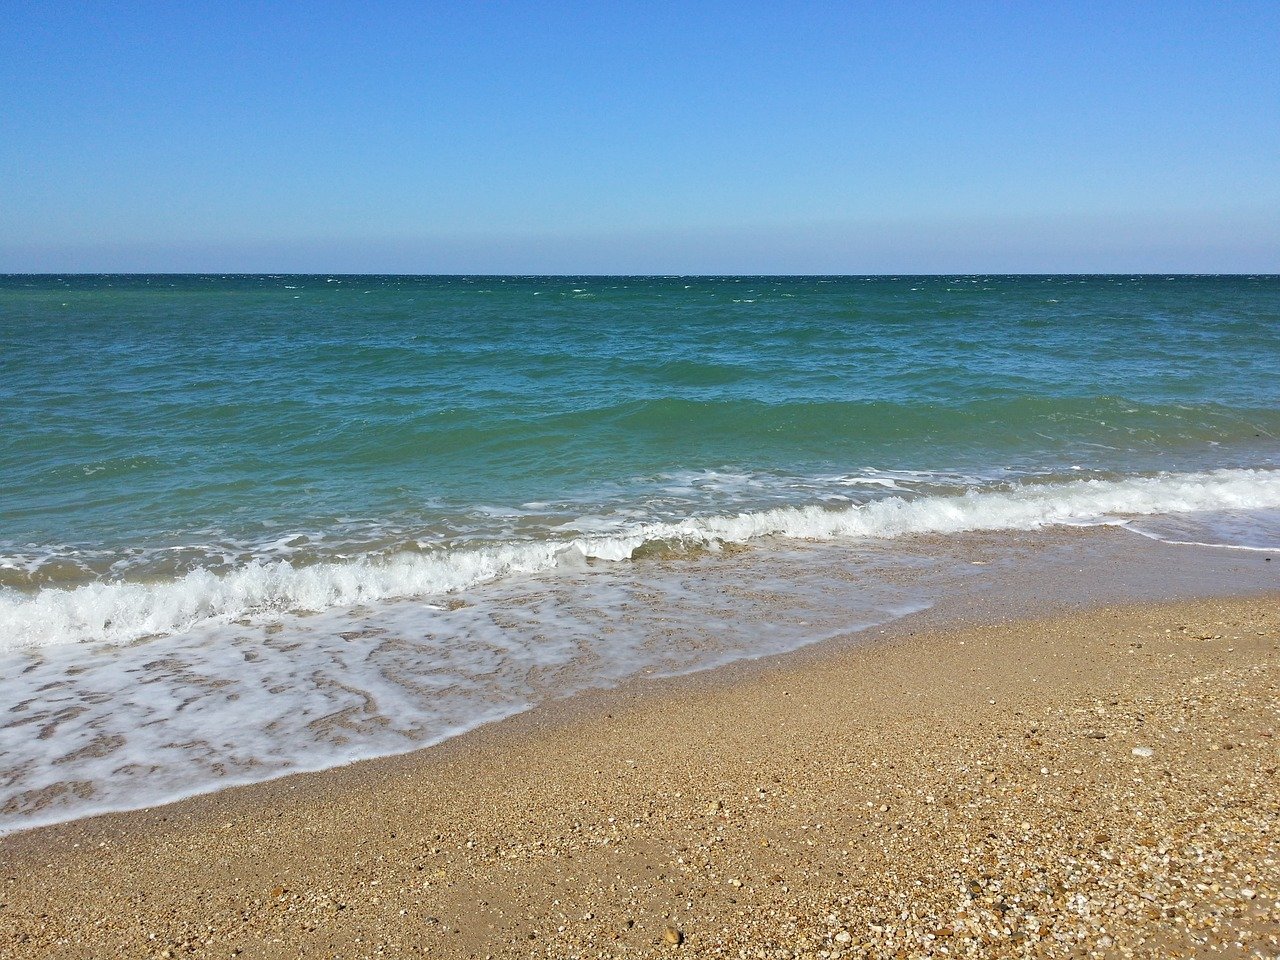 Песчаный пляж Крыма